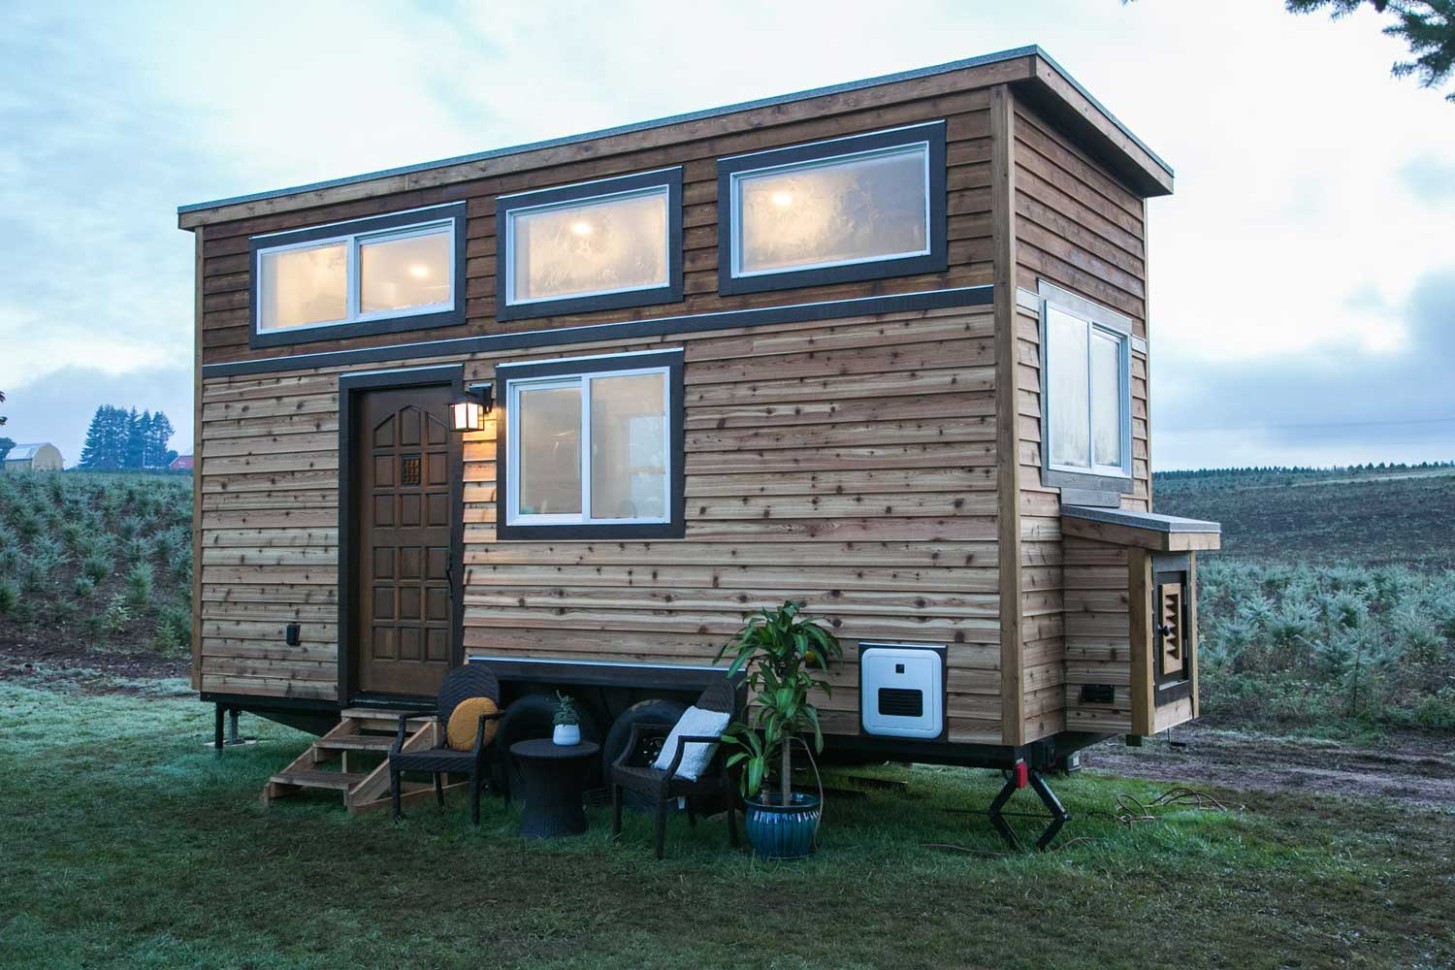 13 Creative Tiny House Ideas for Inspiration Tiny Heirloom - tiny home ideas